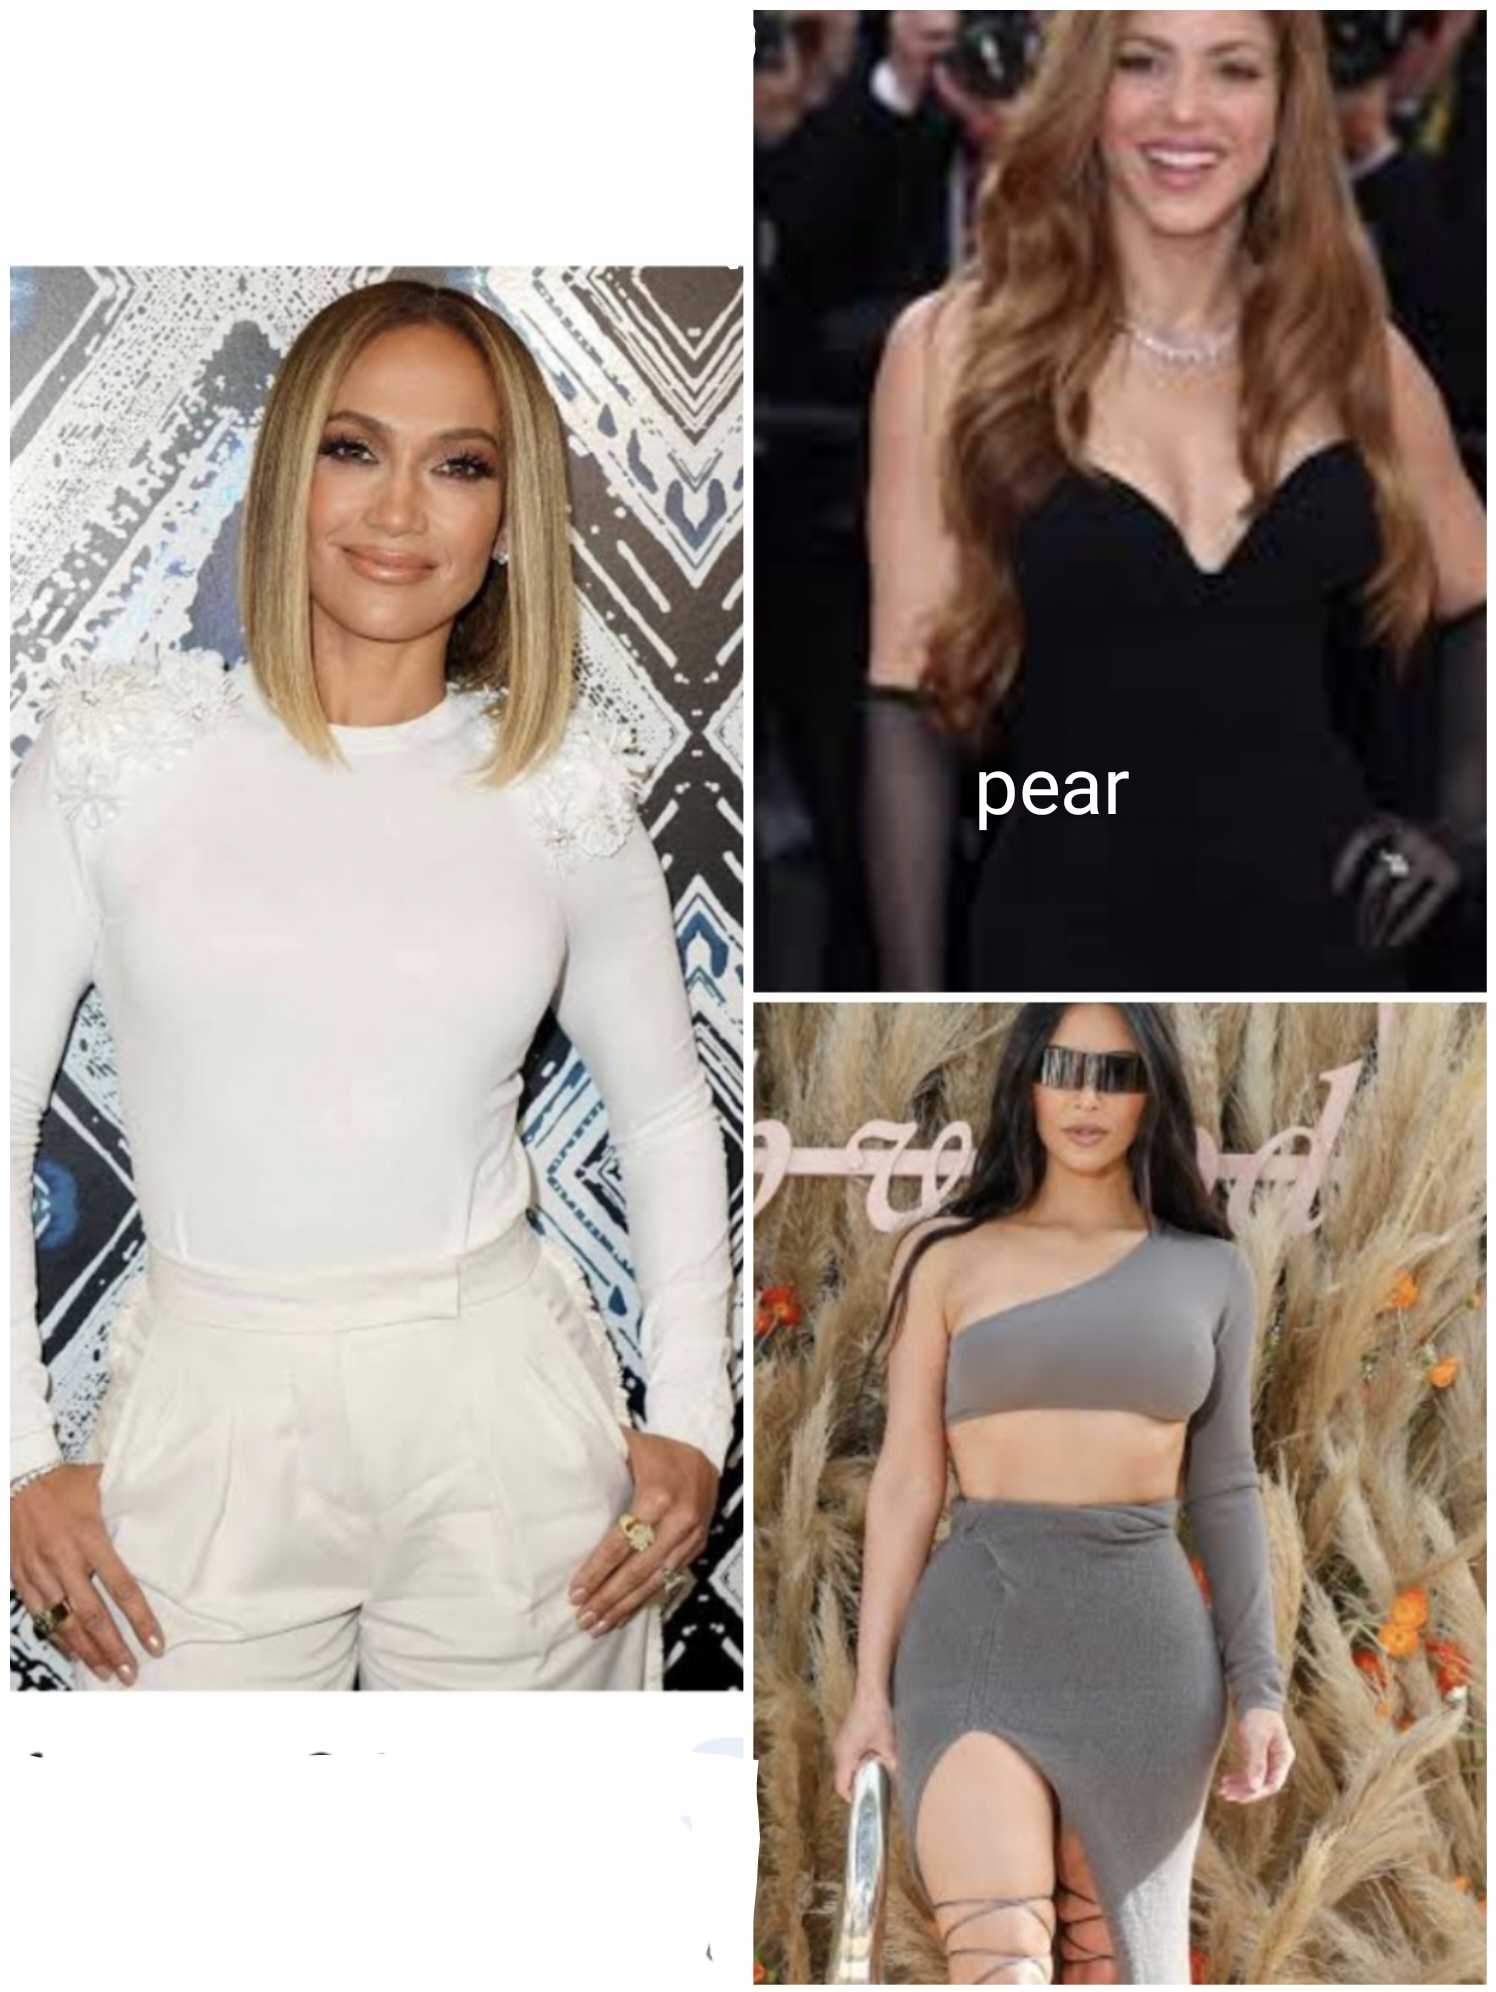 pear-body-shape-celebrities